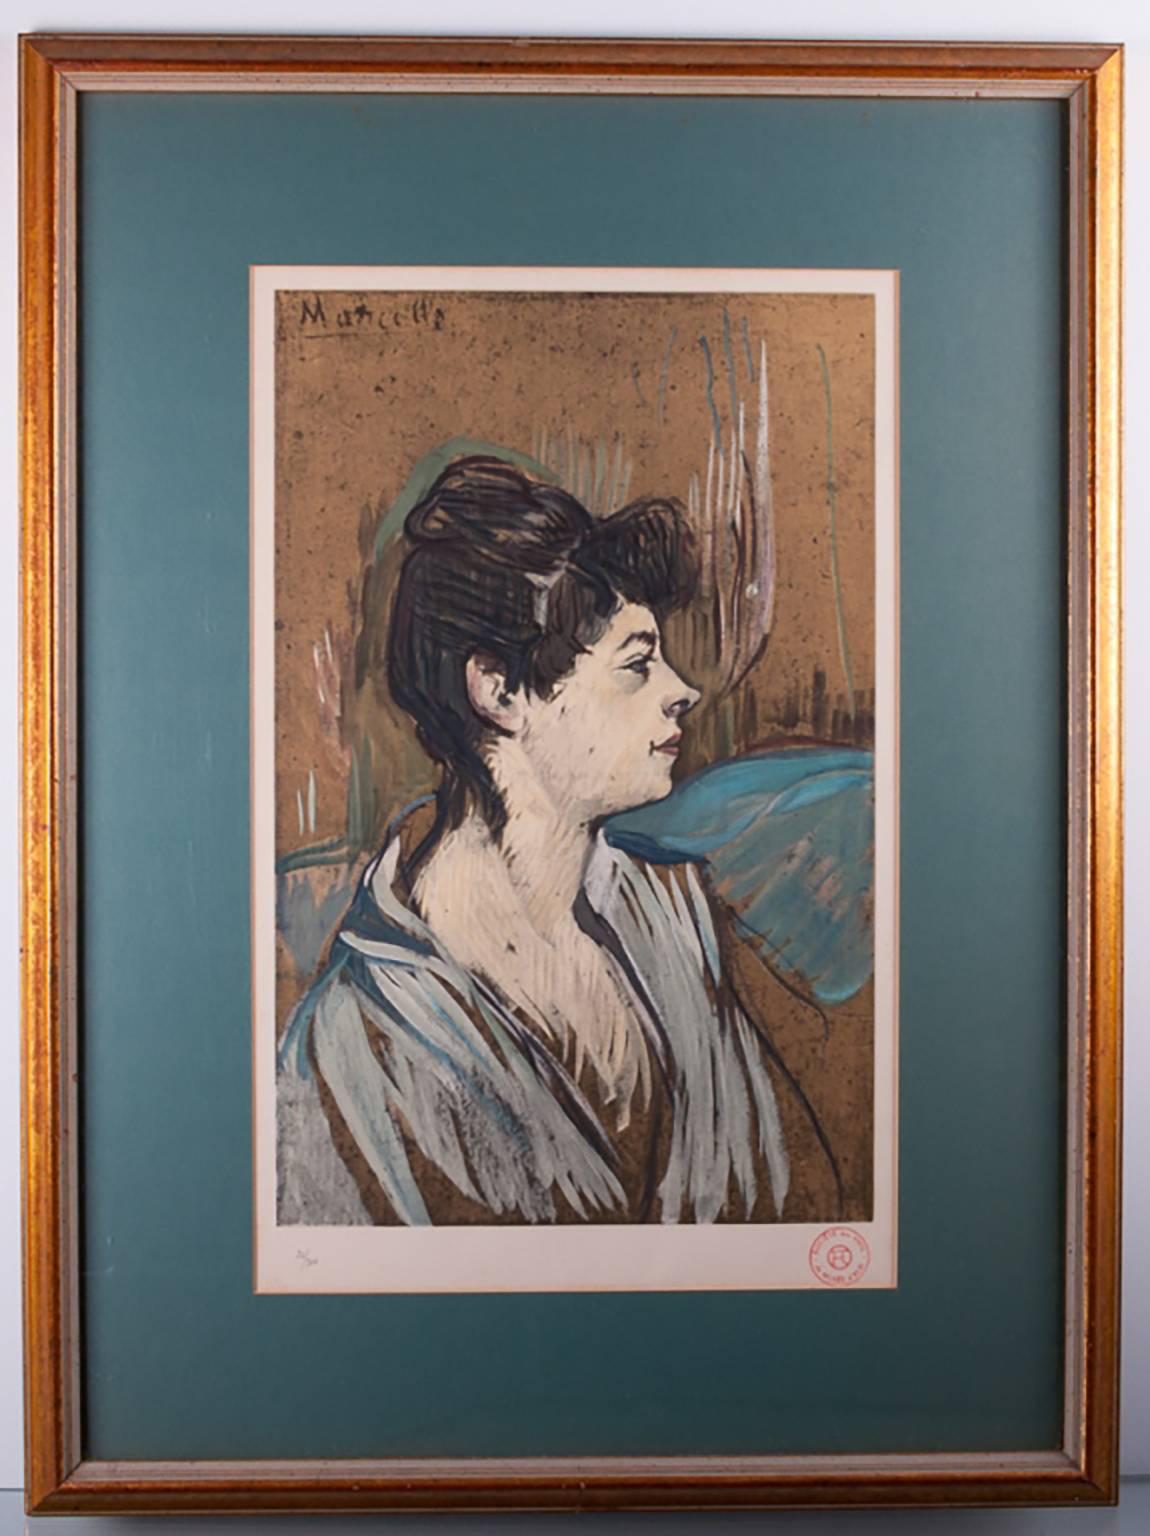 (After) Henri Toulouse Lautrec Portrait Painting - Lautrec ”Portrait of Marcelle” Limited Edition Lithograph in Colors 